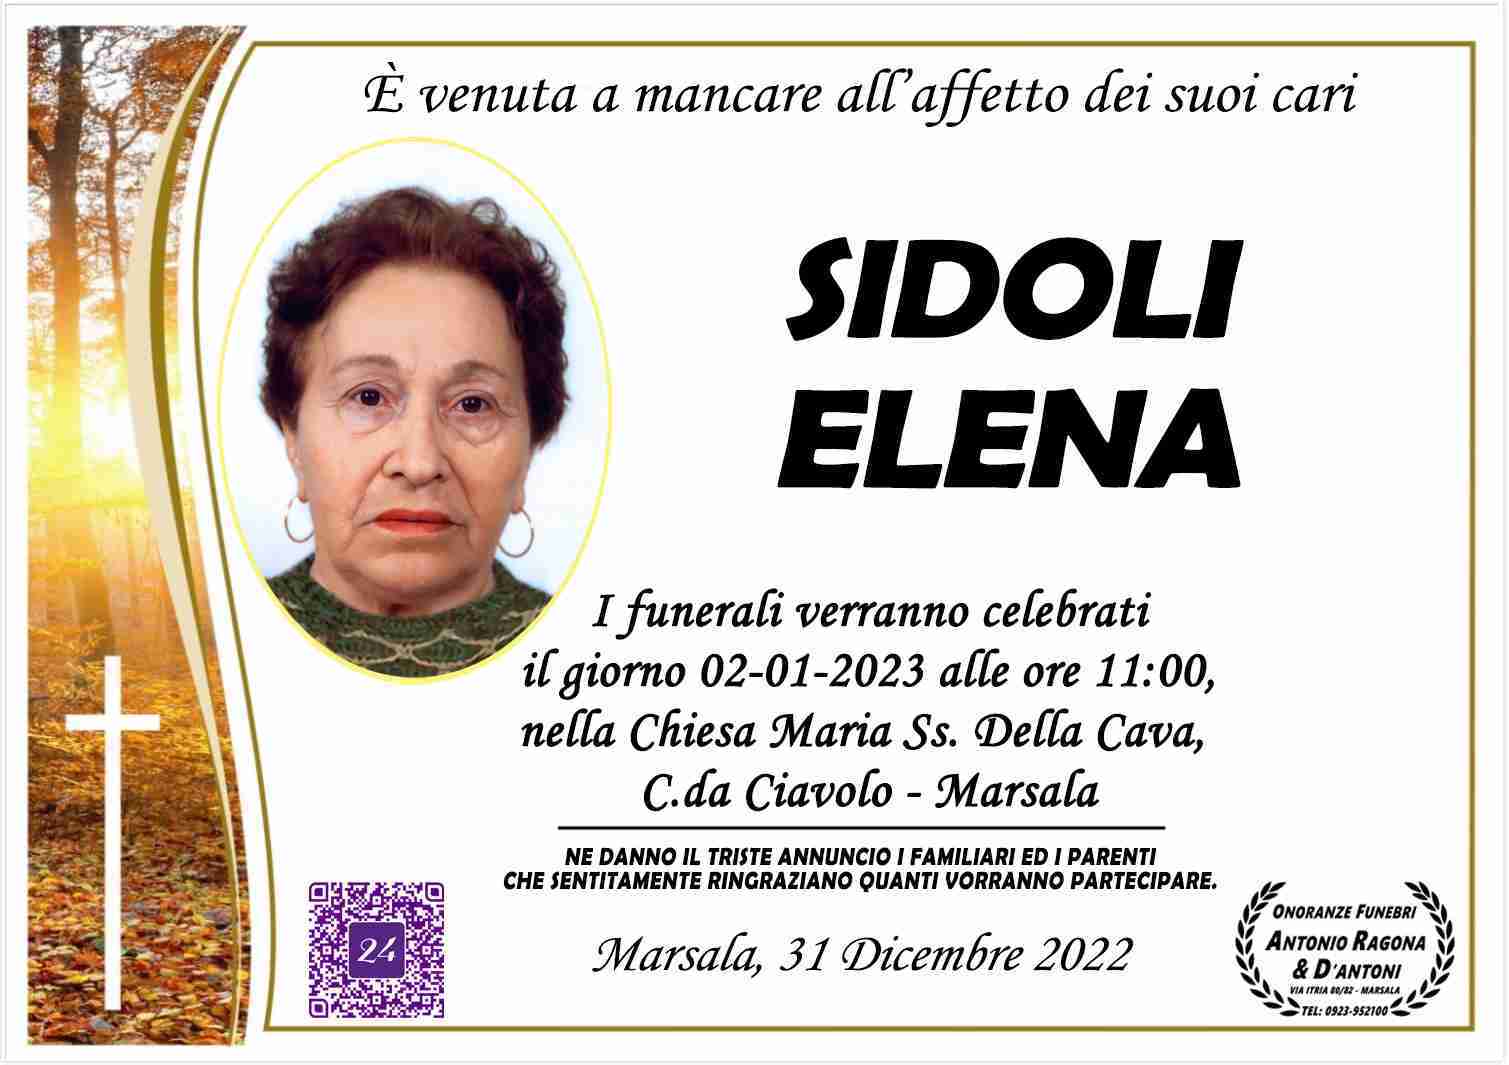 Elena Sidoli